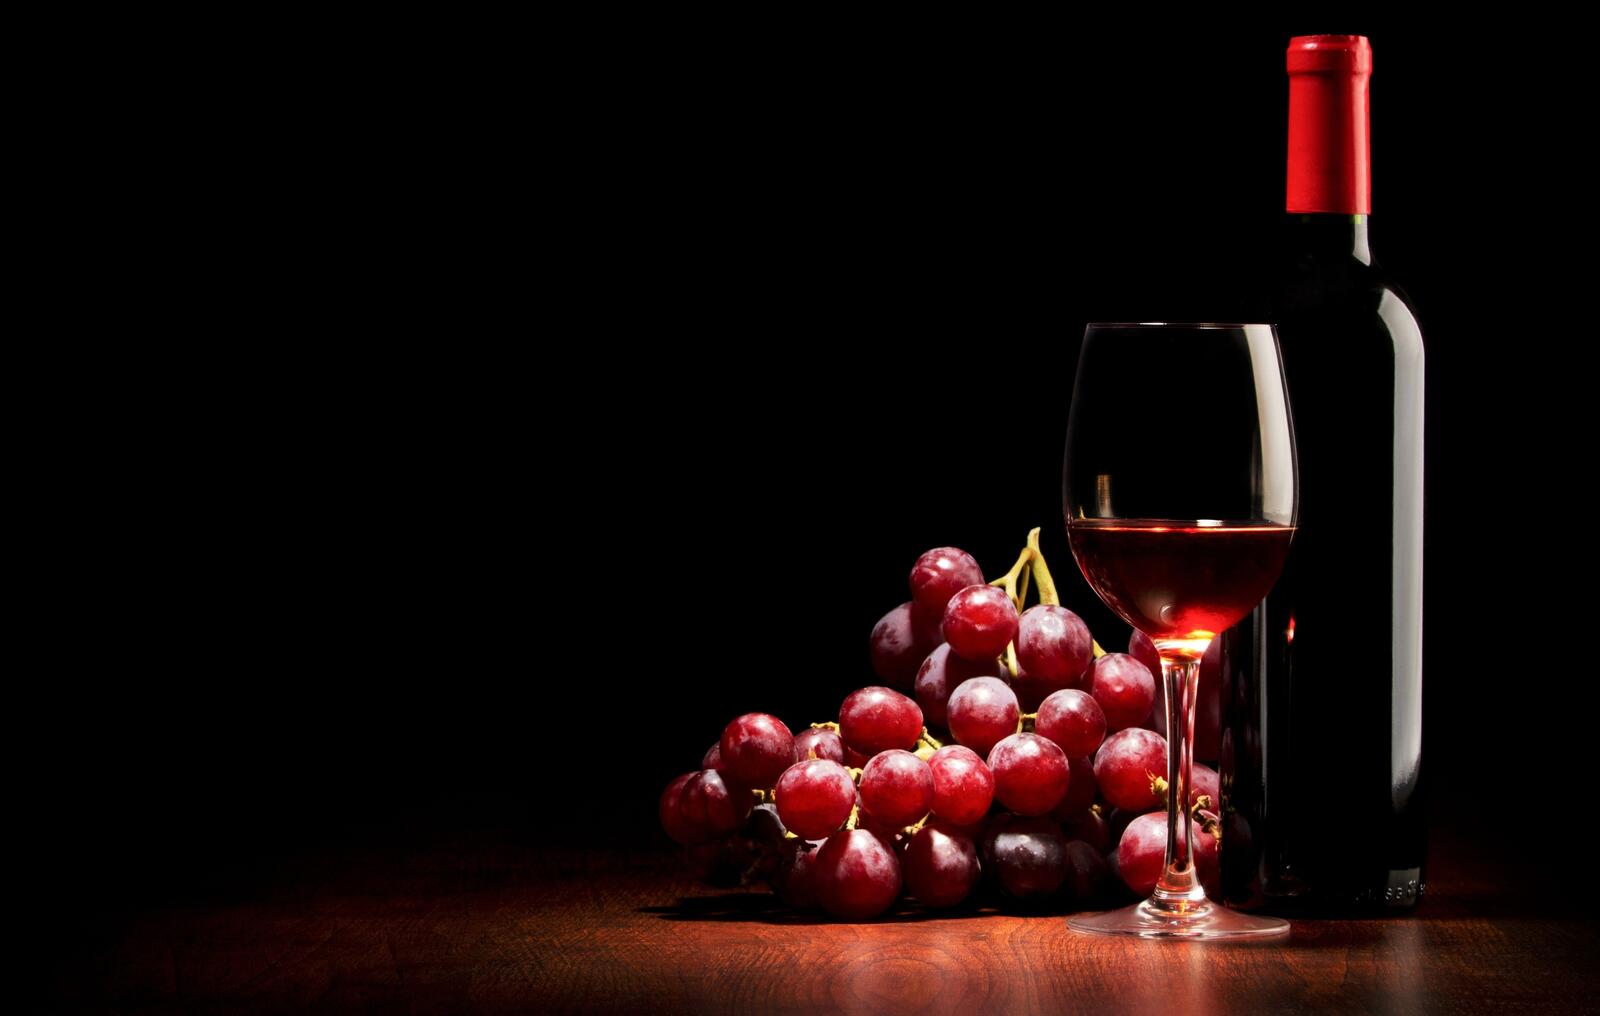 Обои картина красный вино на рабочий стол